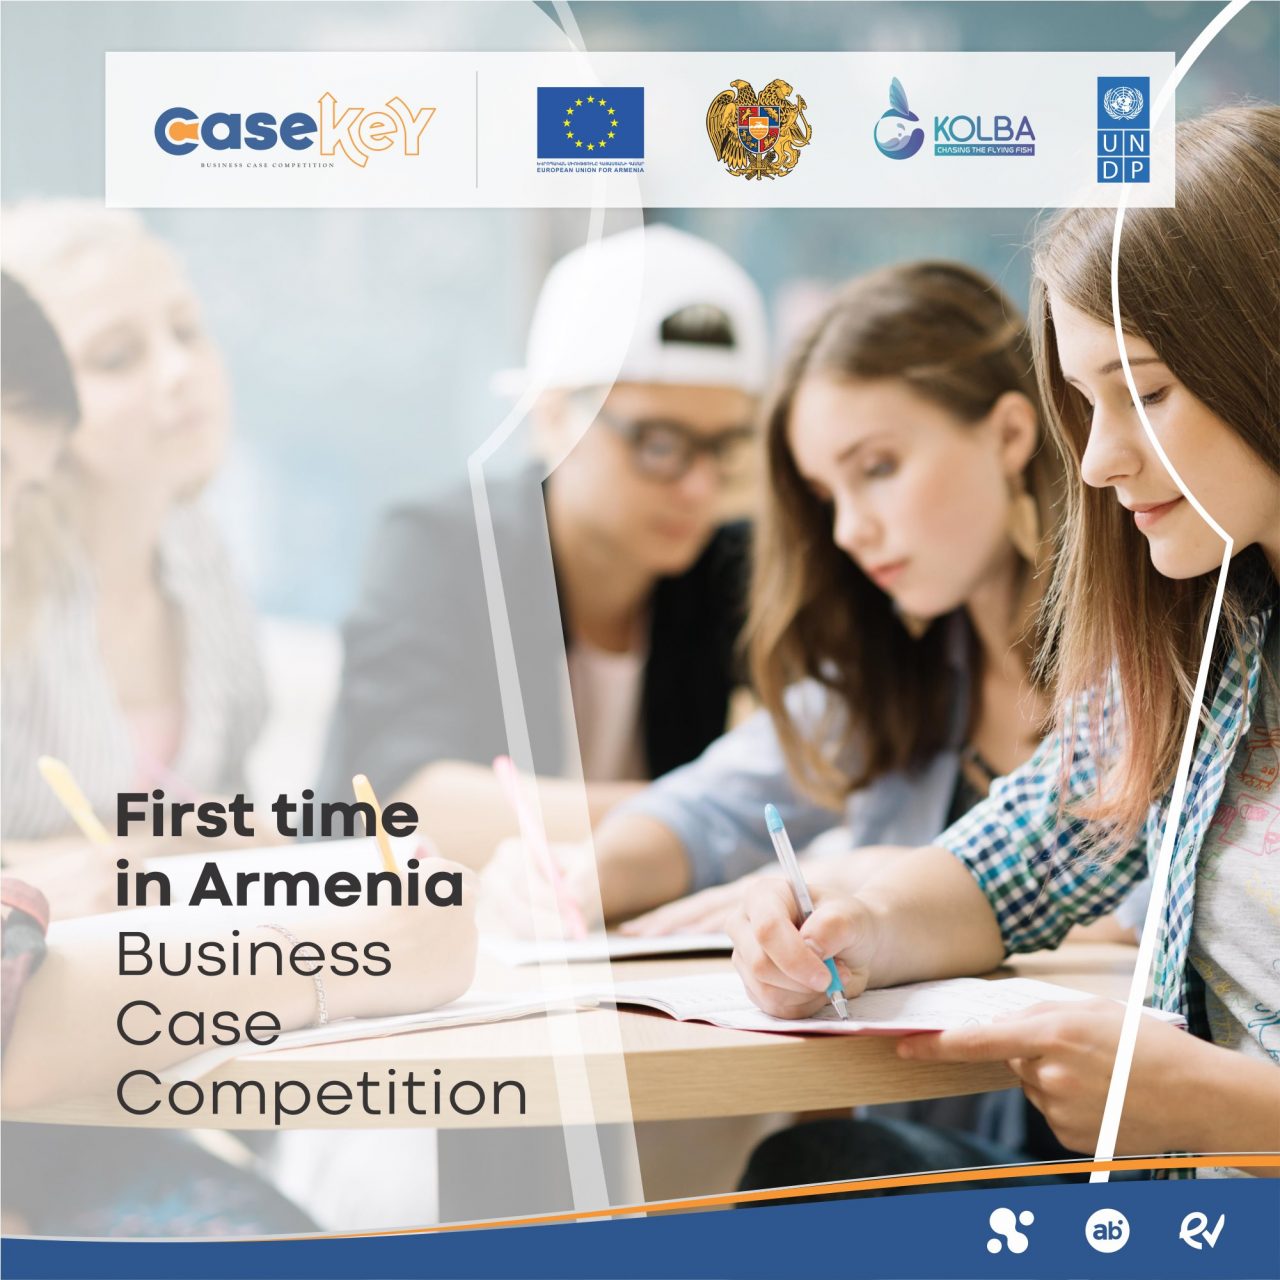 Հայաստանում առաջին անգամ անց է կացվում CaseKey բիզնես խնդիրների լուծման մրցույթը